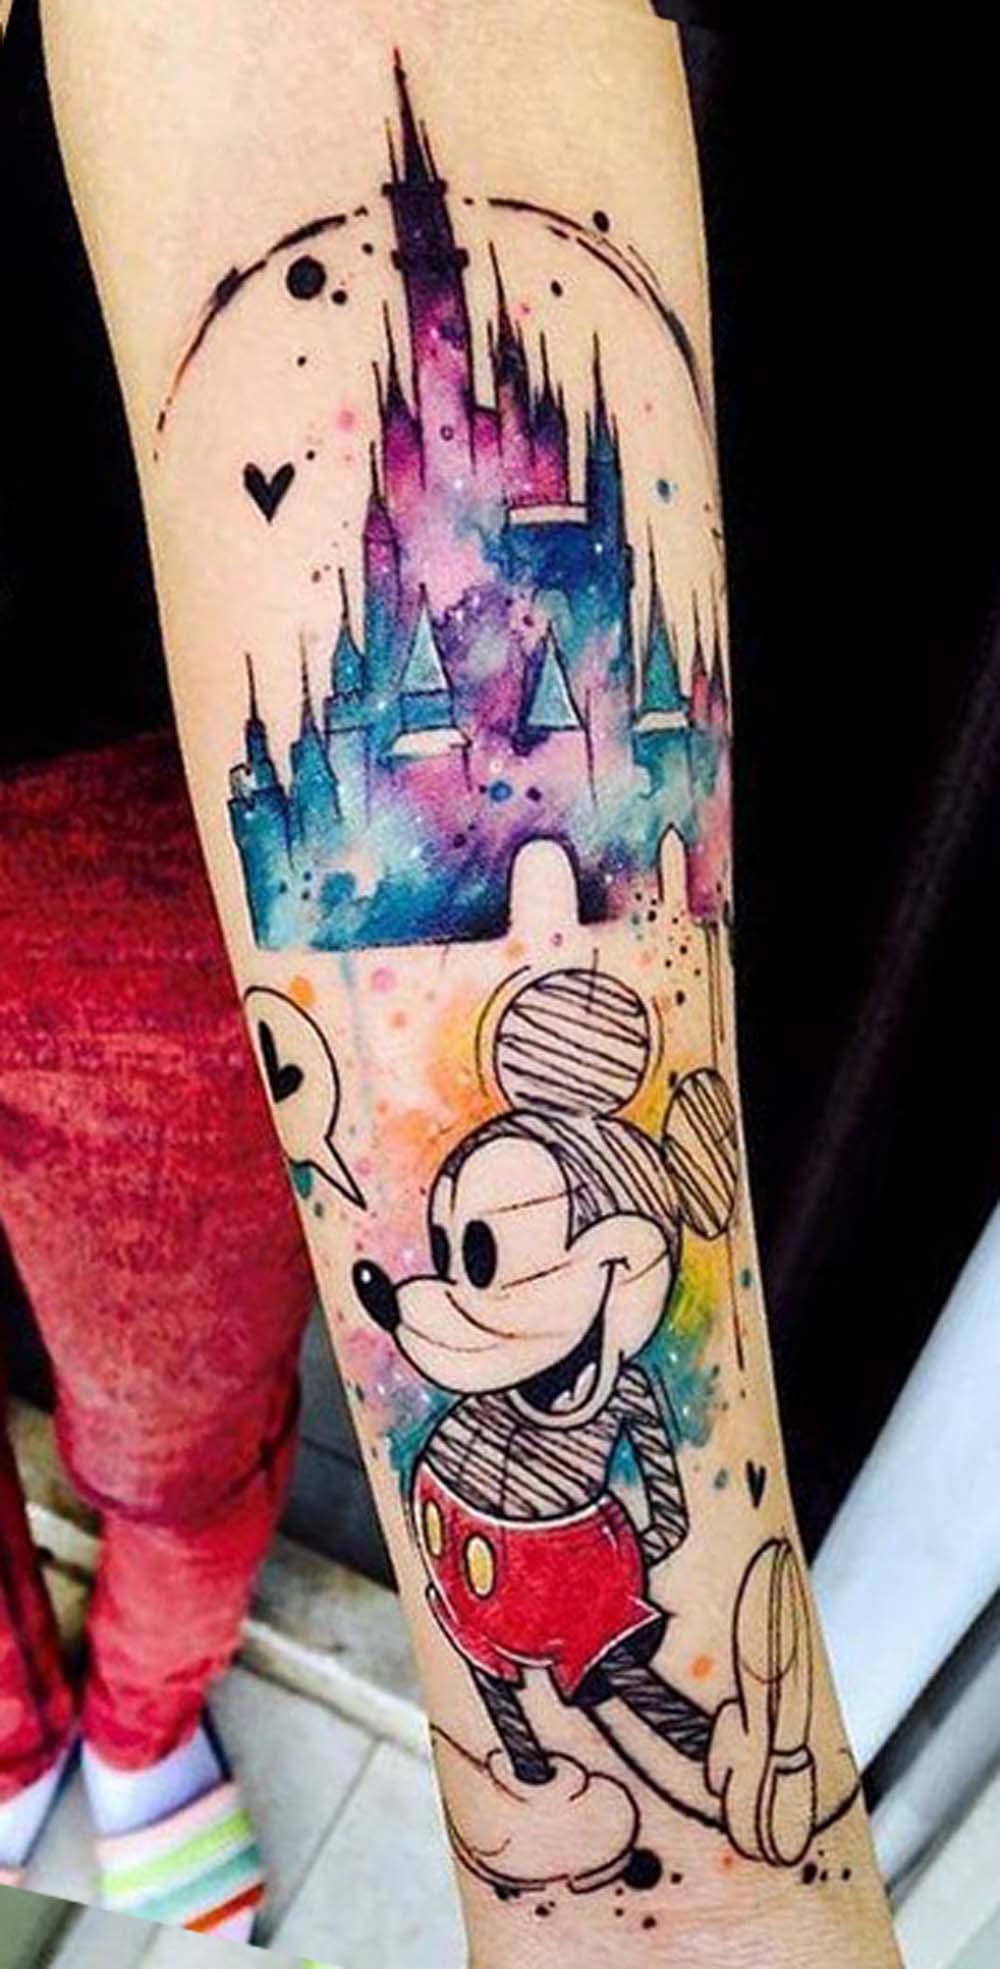 Watercolor Sketch Mickey Mouse Disney Castle Forearm Tattoo Ideas for Women - www.MyBodiArt.com